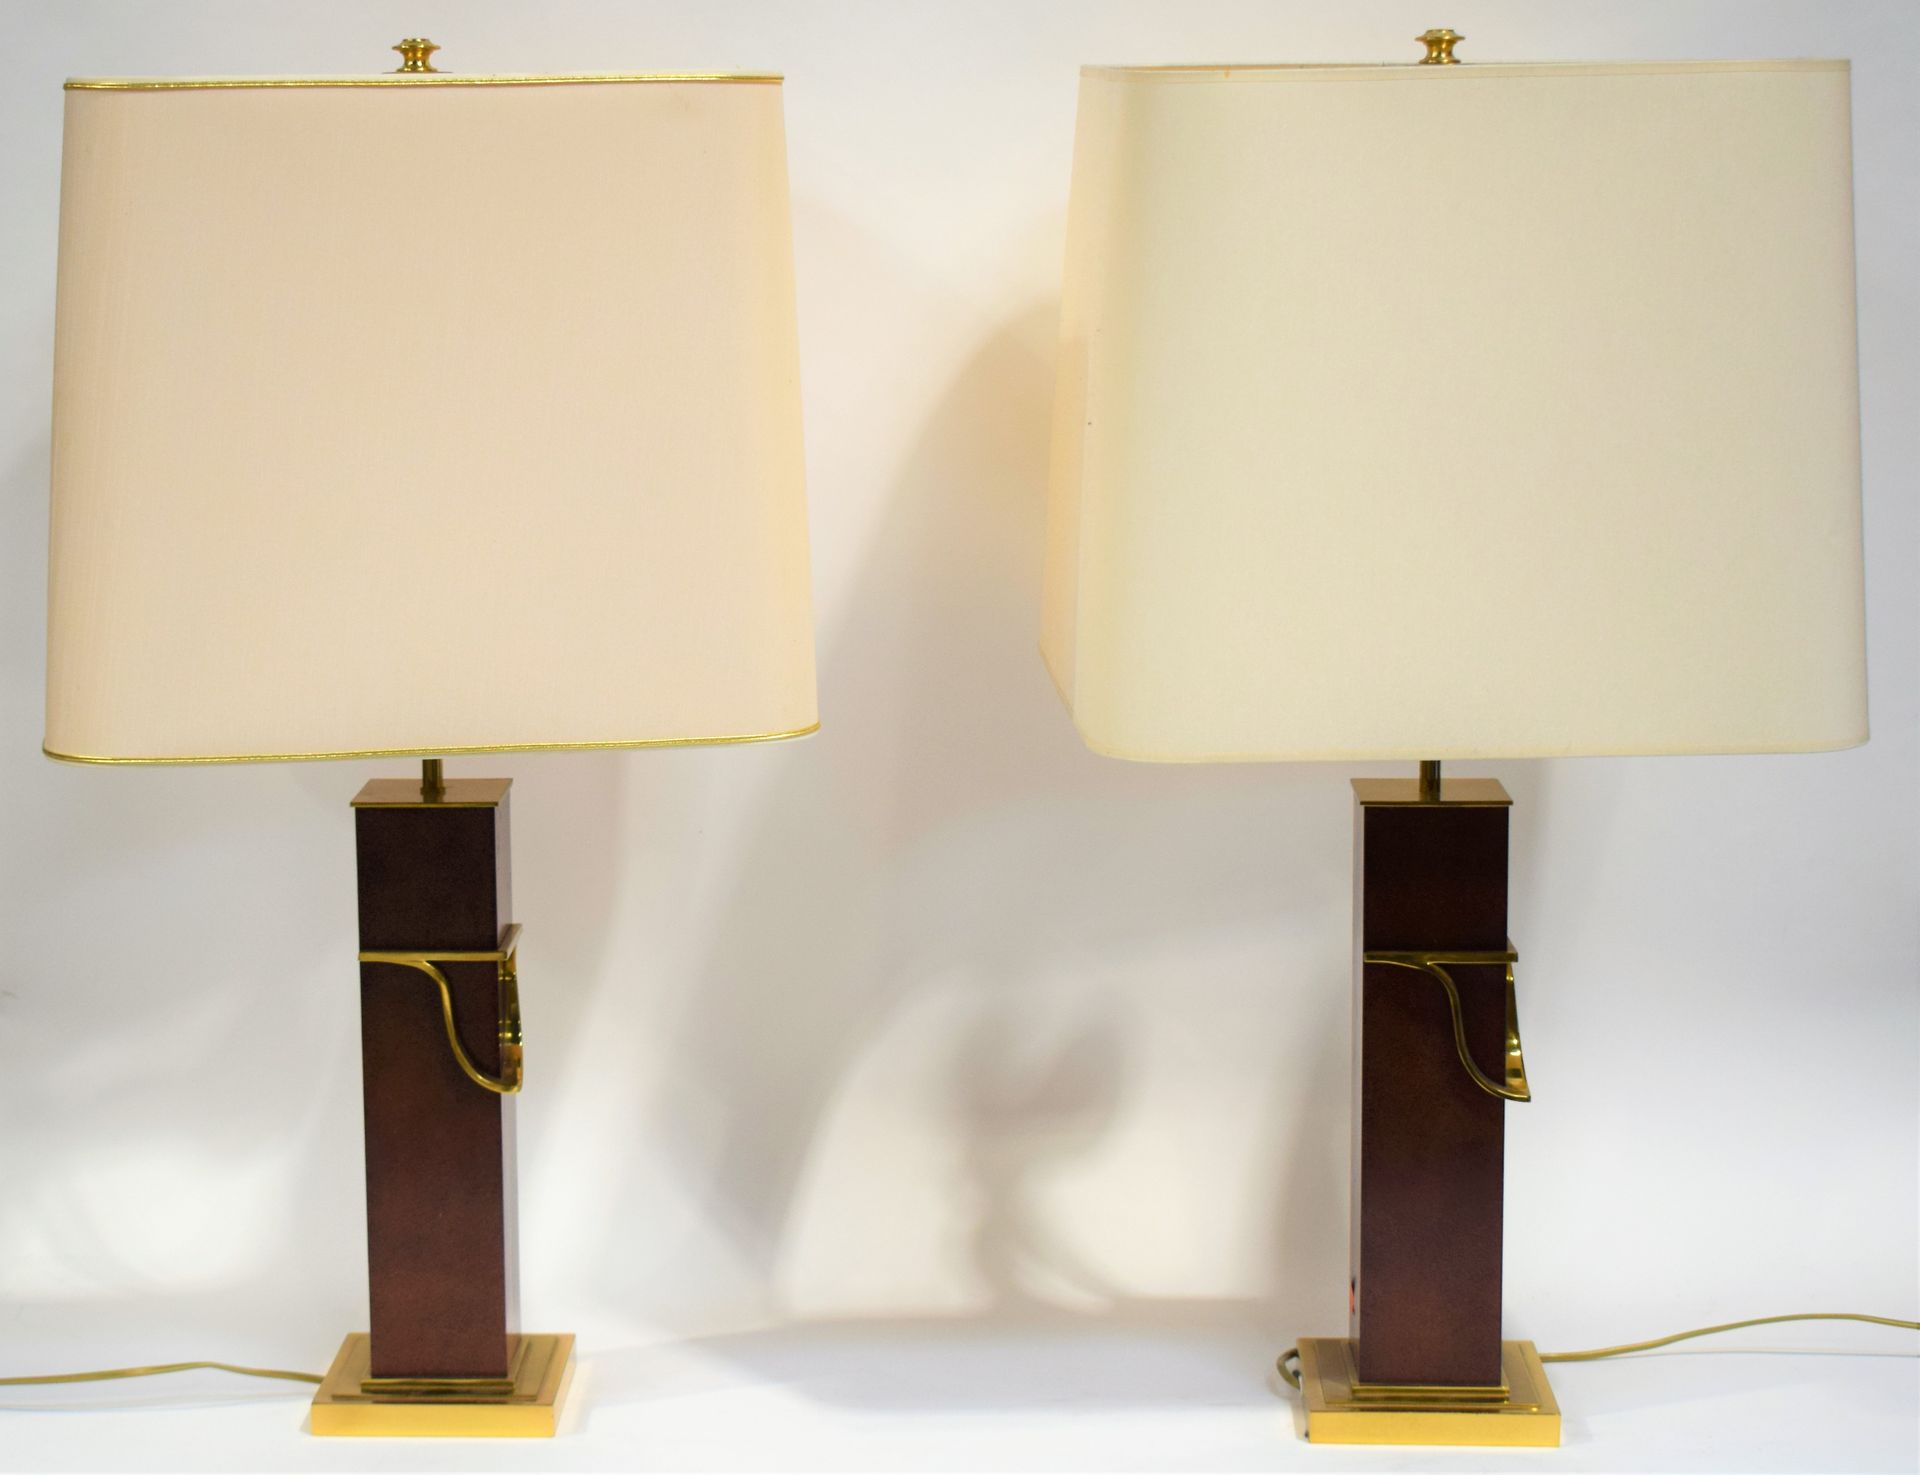 Null 一对两盏灯，脚下是带有棕色铜锈的金属和镀金的黄铜。比利时的设计。

78 x 14 cm

|

一对两盏灯，脚下是棕色铜锈的金属和镀金的黄铜。比利时&hellip;